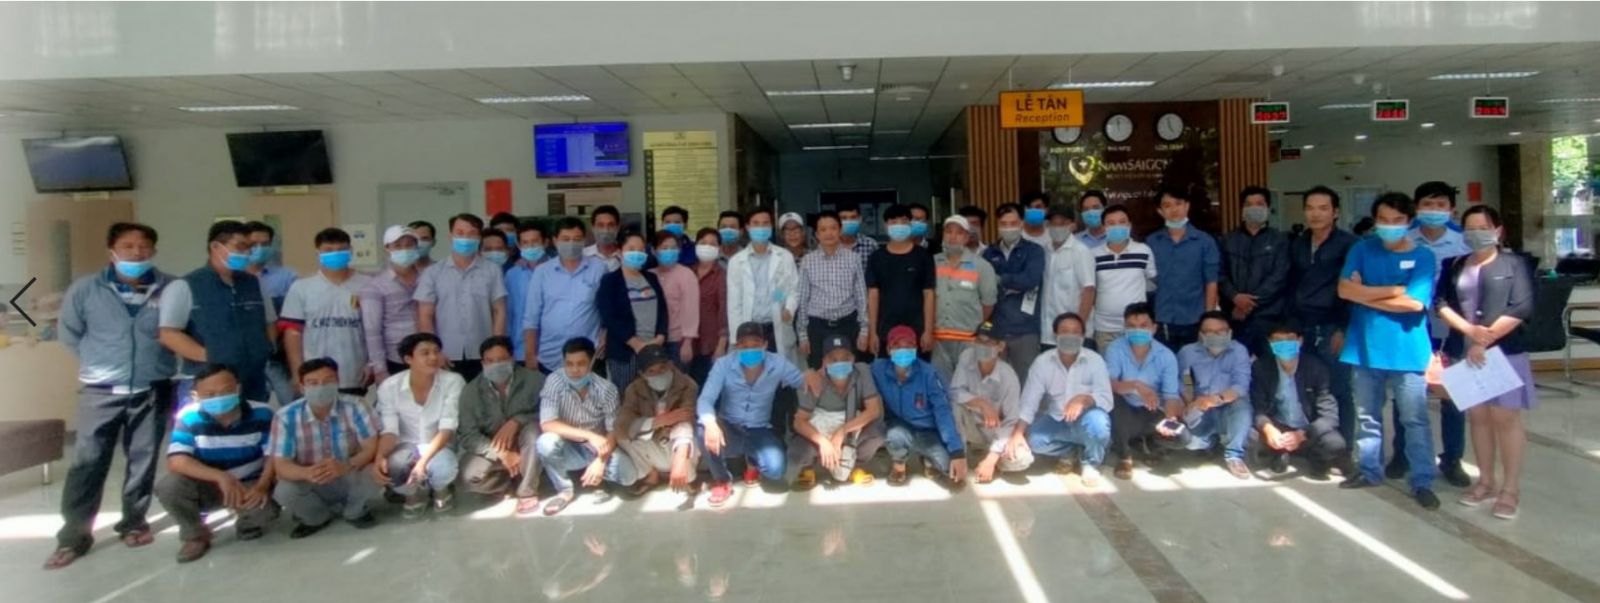 công ty VTA tổ chức khám sức khỏe định kỳ cho toàn bộ công nhân viên nhà máy tại bệnh viễn Nam Sài Gòn